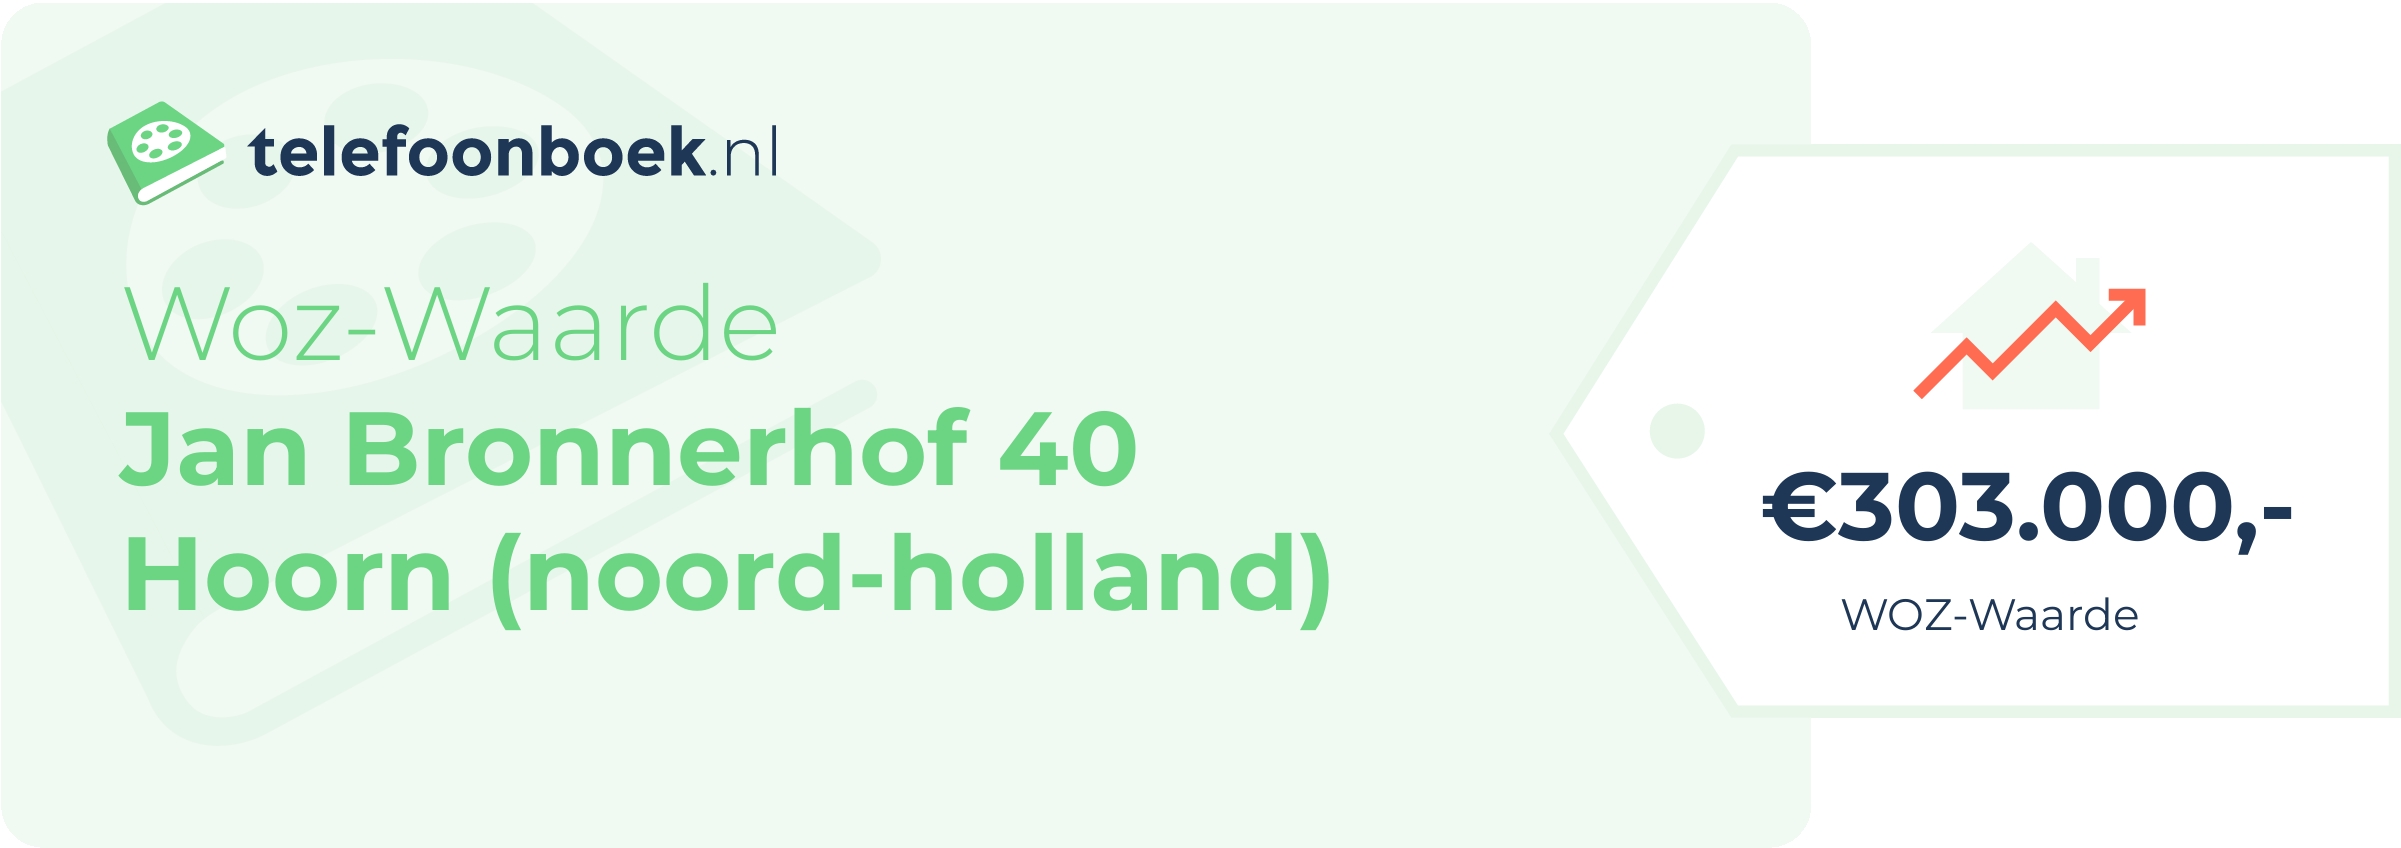 WOZ-waarde Jan Bronnerhof 40 Hoorn (Noord-Holland)